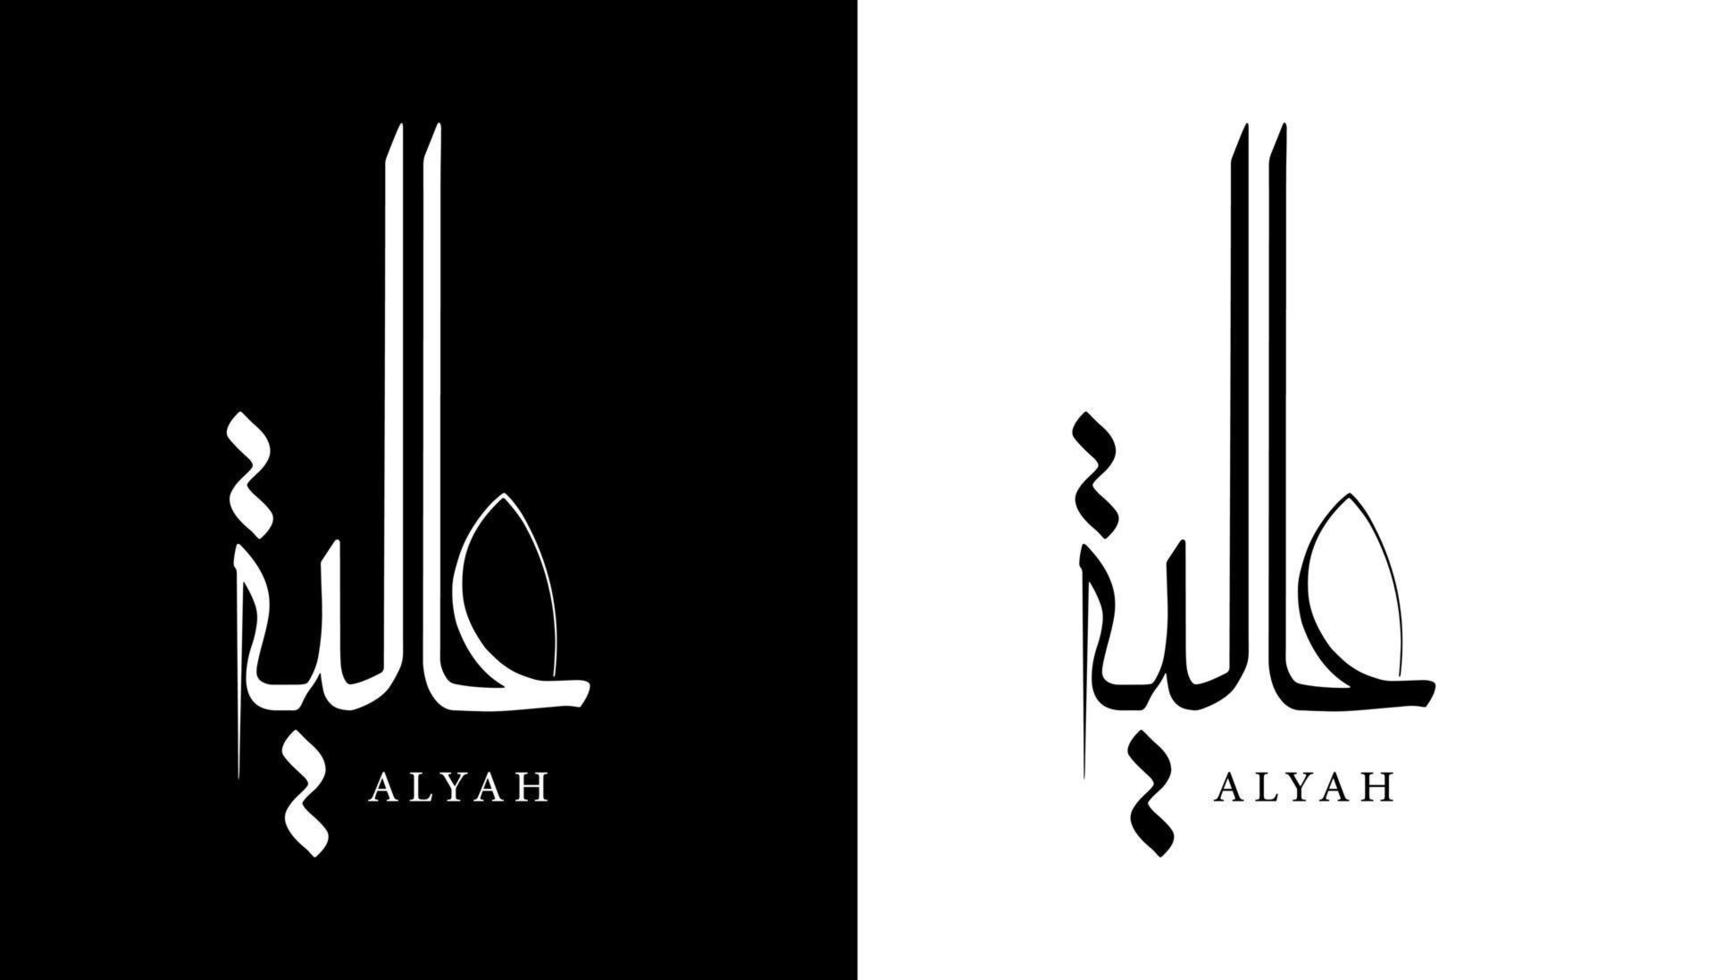 nome de caligrafia árabe traduzido 'alyah' letras árabes alfabeto fonte letras ilustração em vetor logotipo islâmico